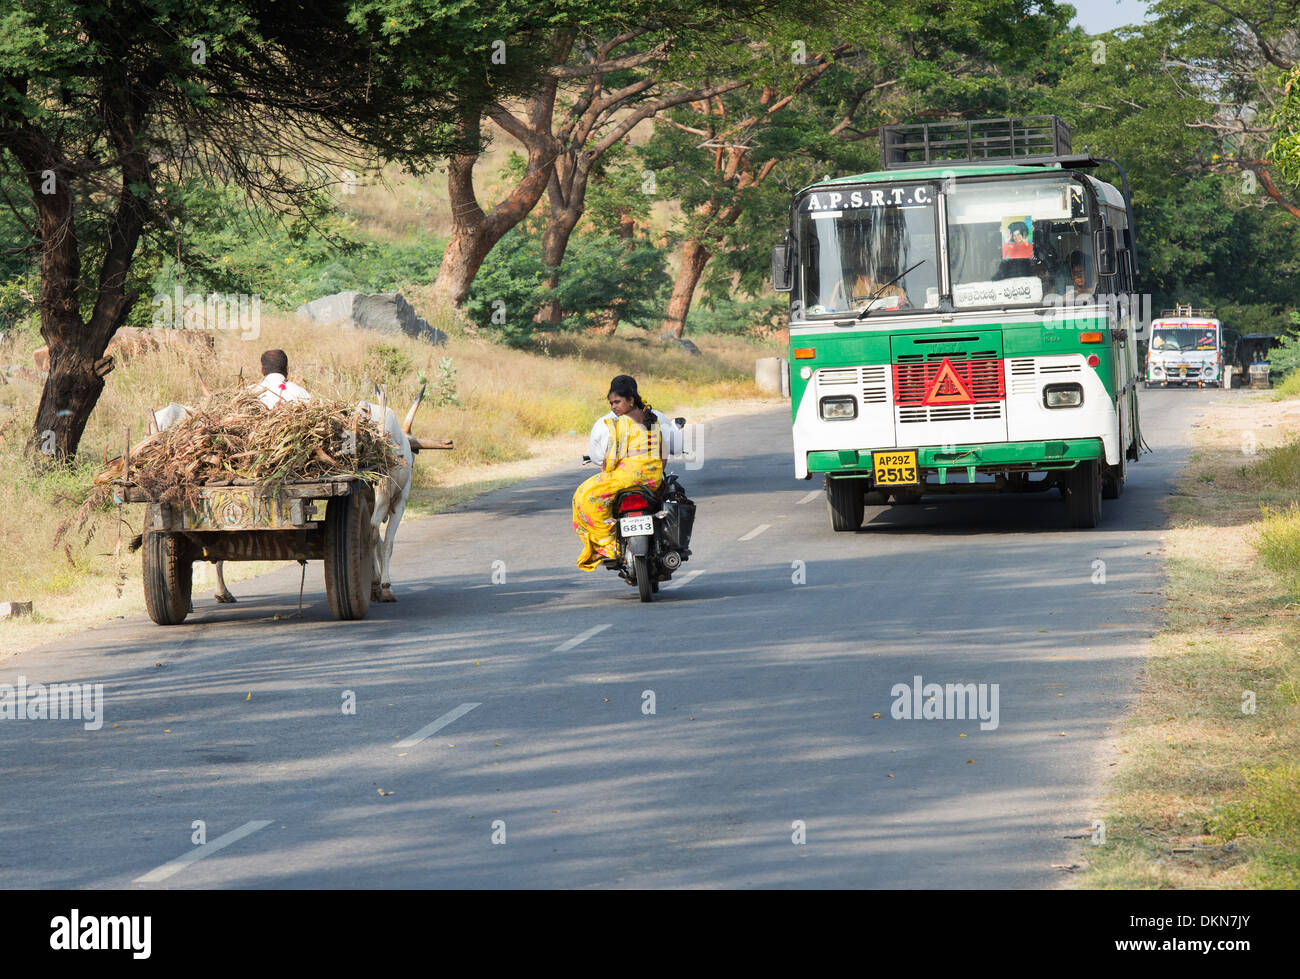 Bus indiano, carrello di giovenco e il motociclo su una strada di campagna. Andhra Pradesh, India Foto Stock